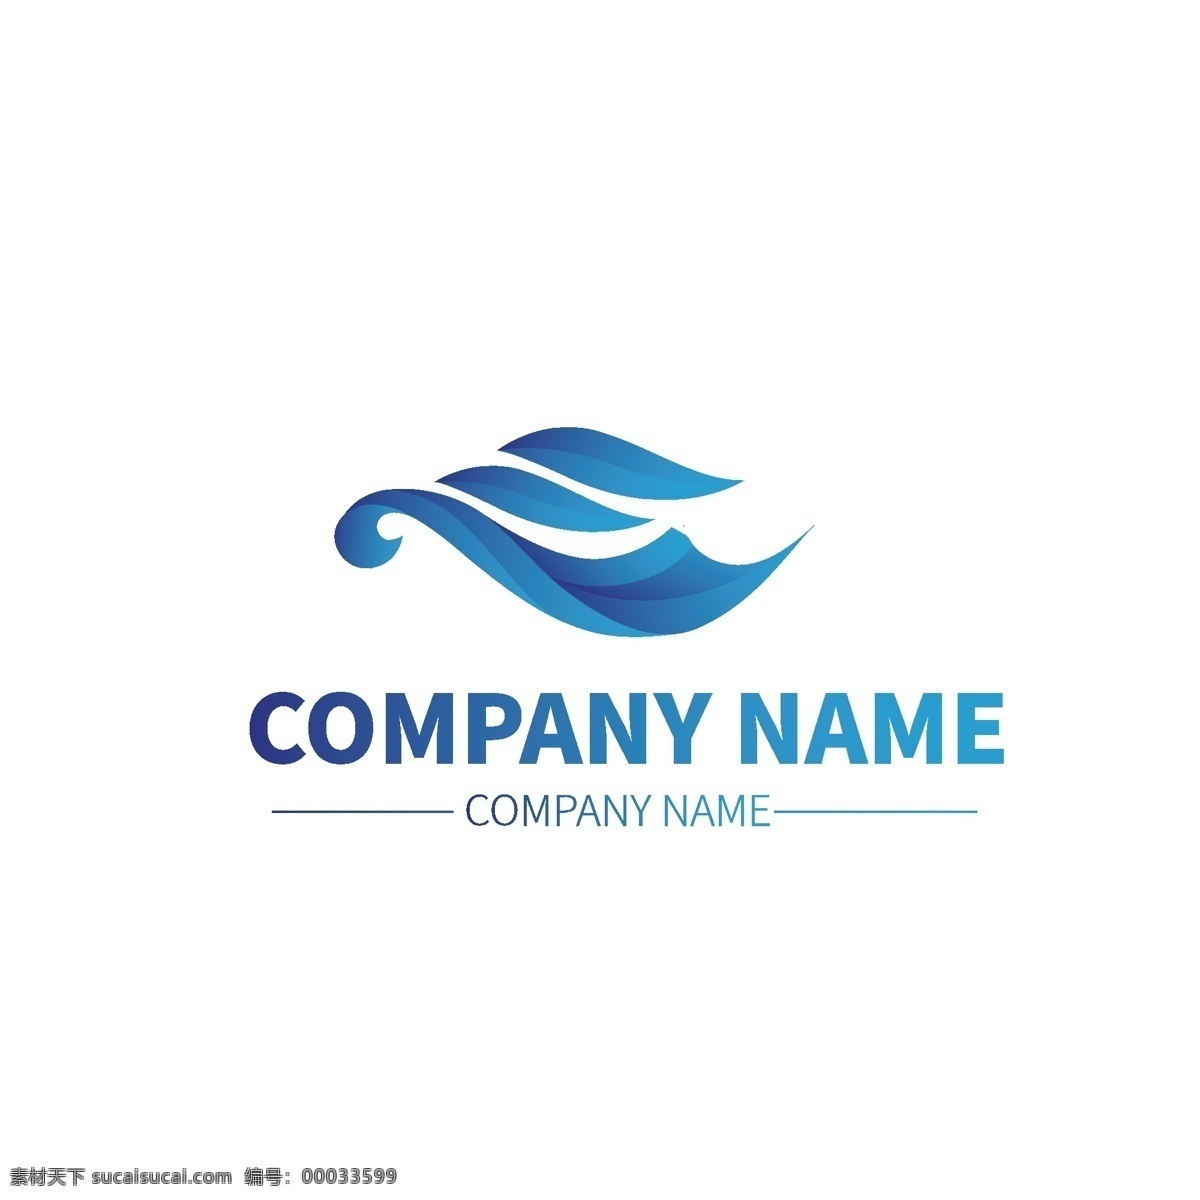 水产 药品 公司 企业 形状 商标 logo 颜色 标示 图标矢量图 高档logo 公司logo 大气logo 龙卷风图标 logo设计